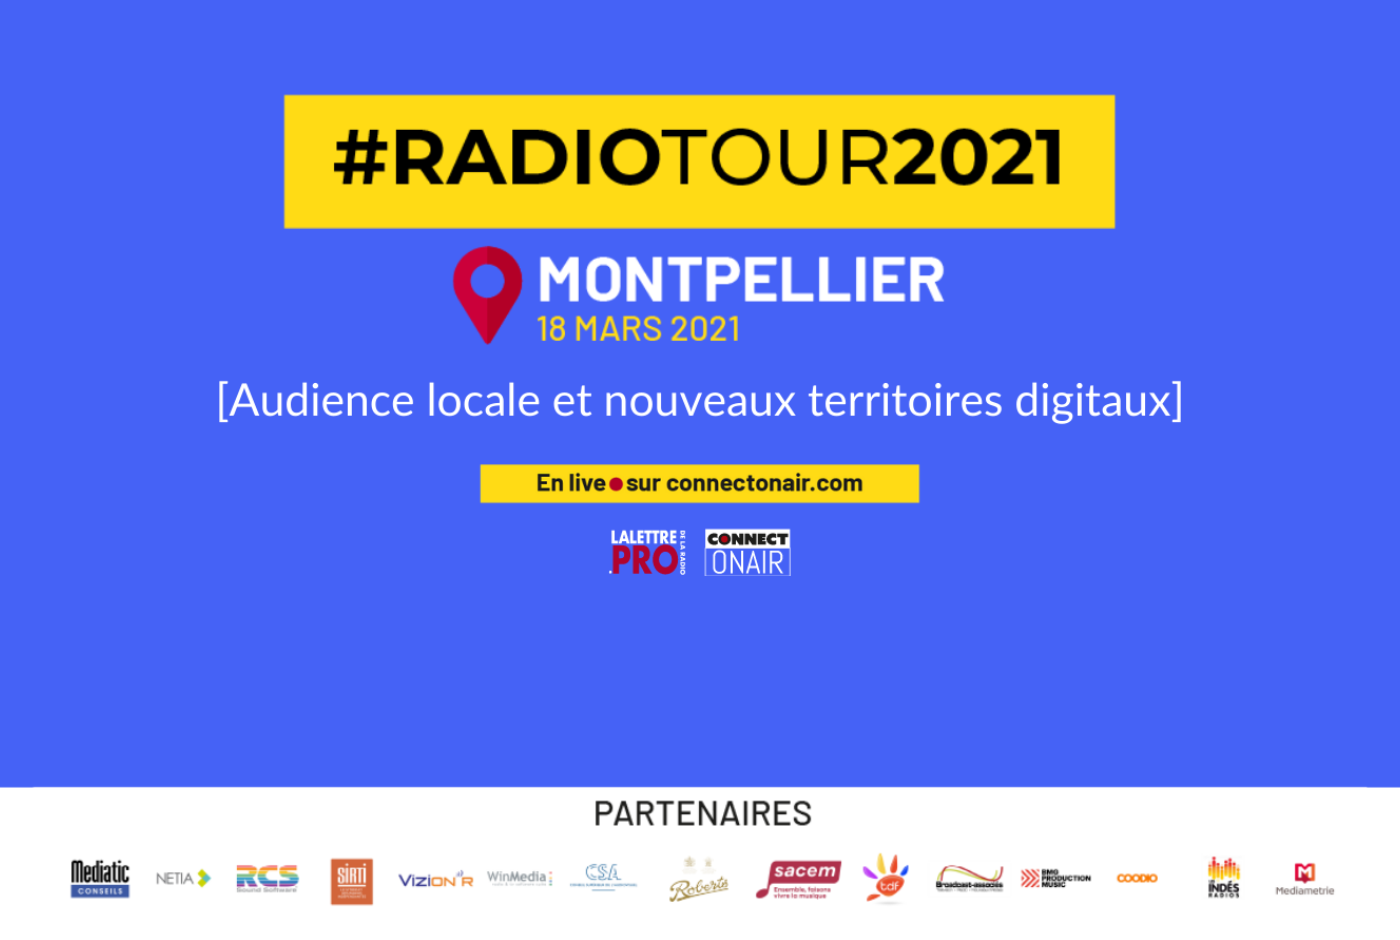 RadioTour à Montpellier : le programme heure par heure